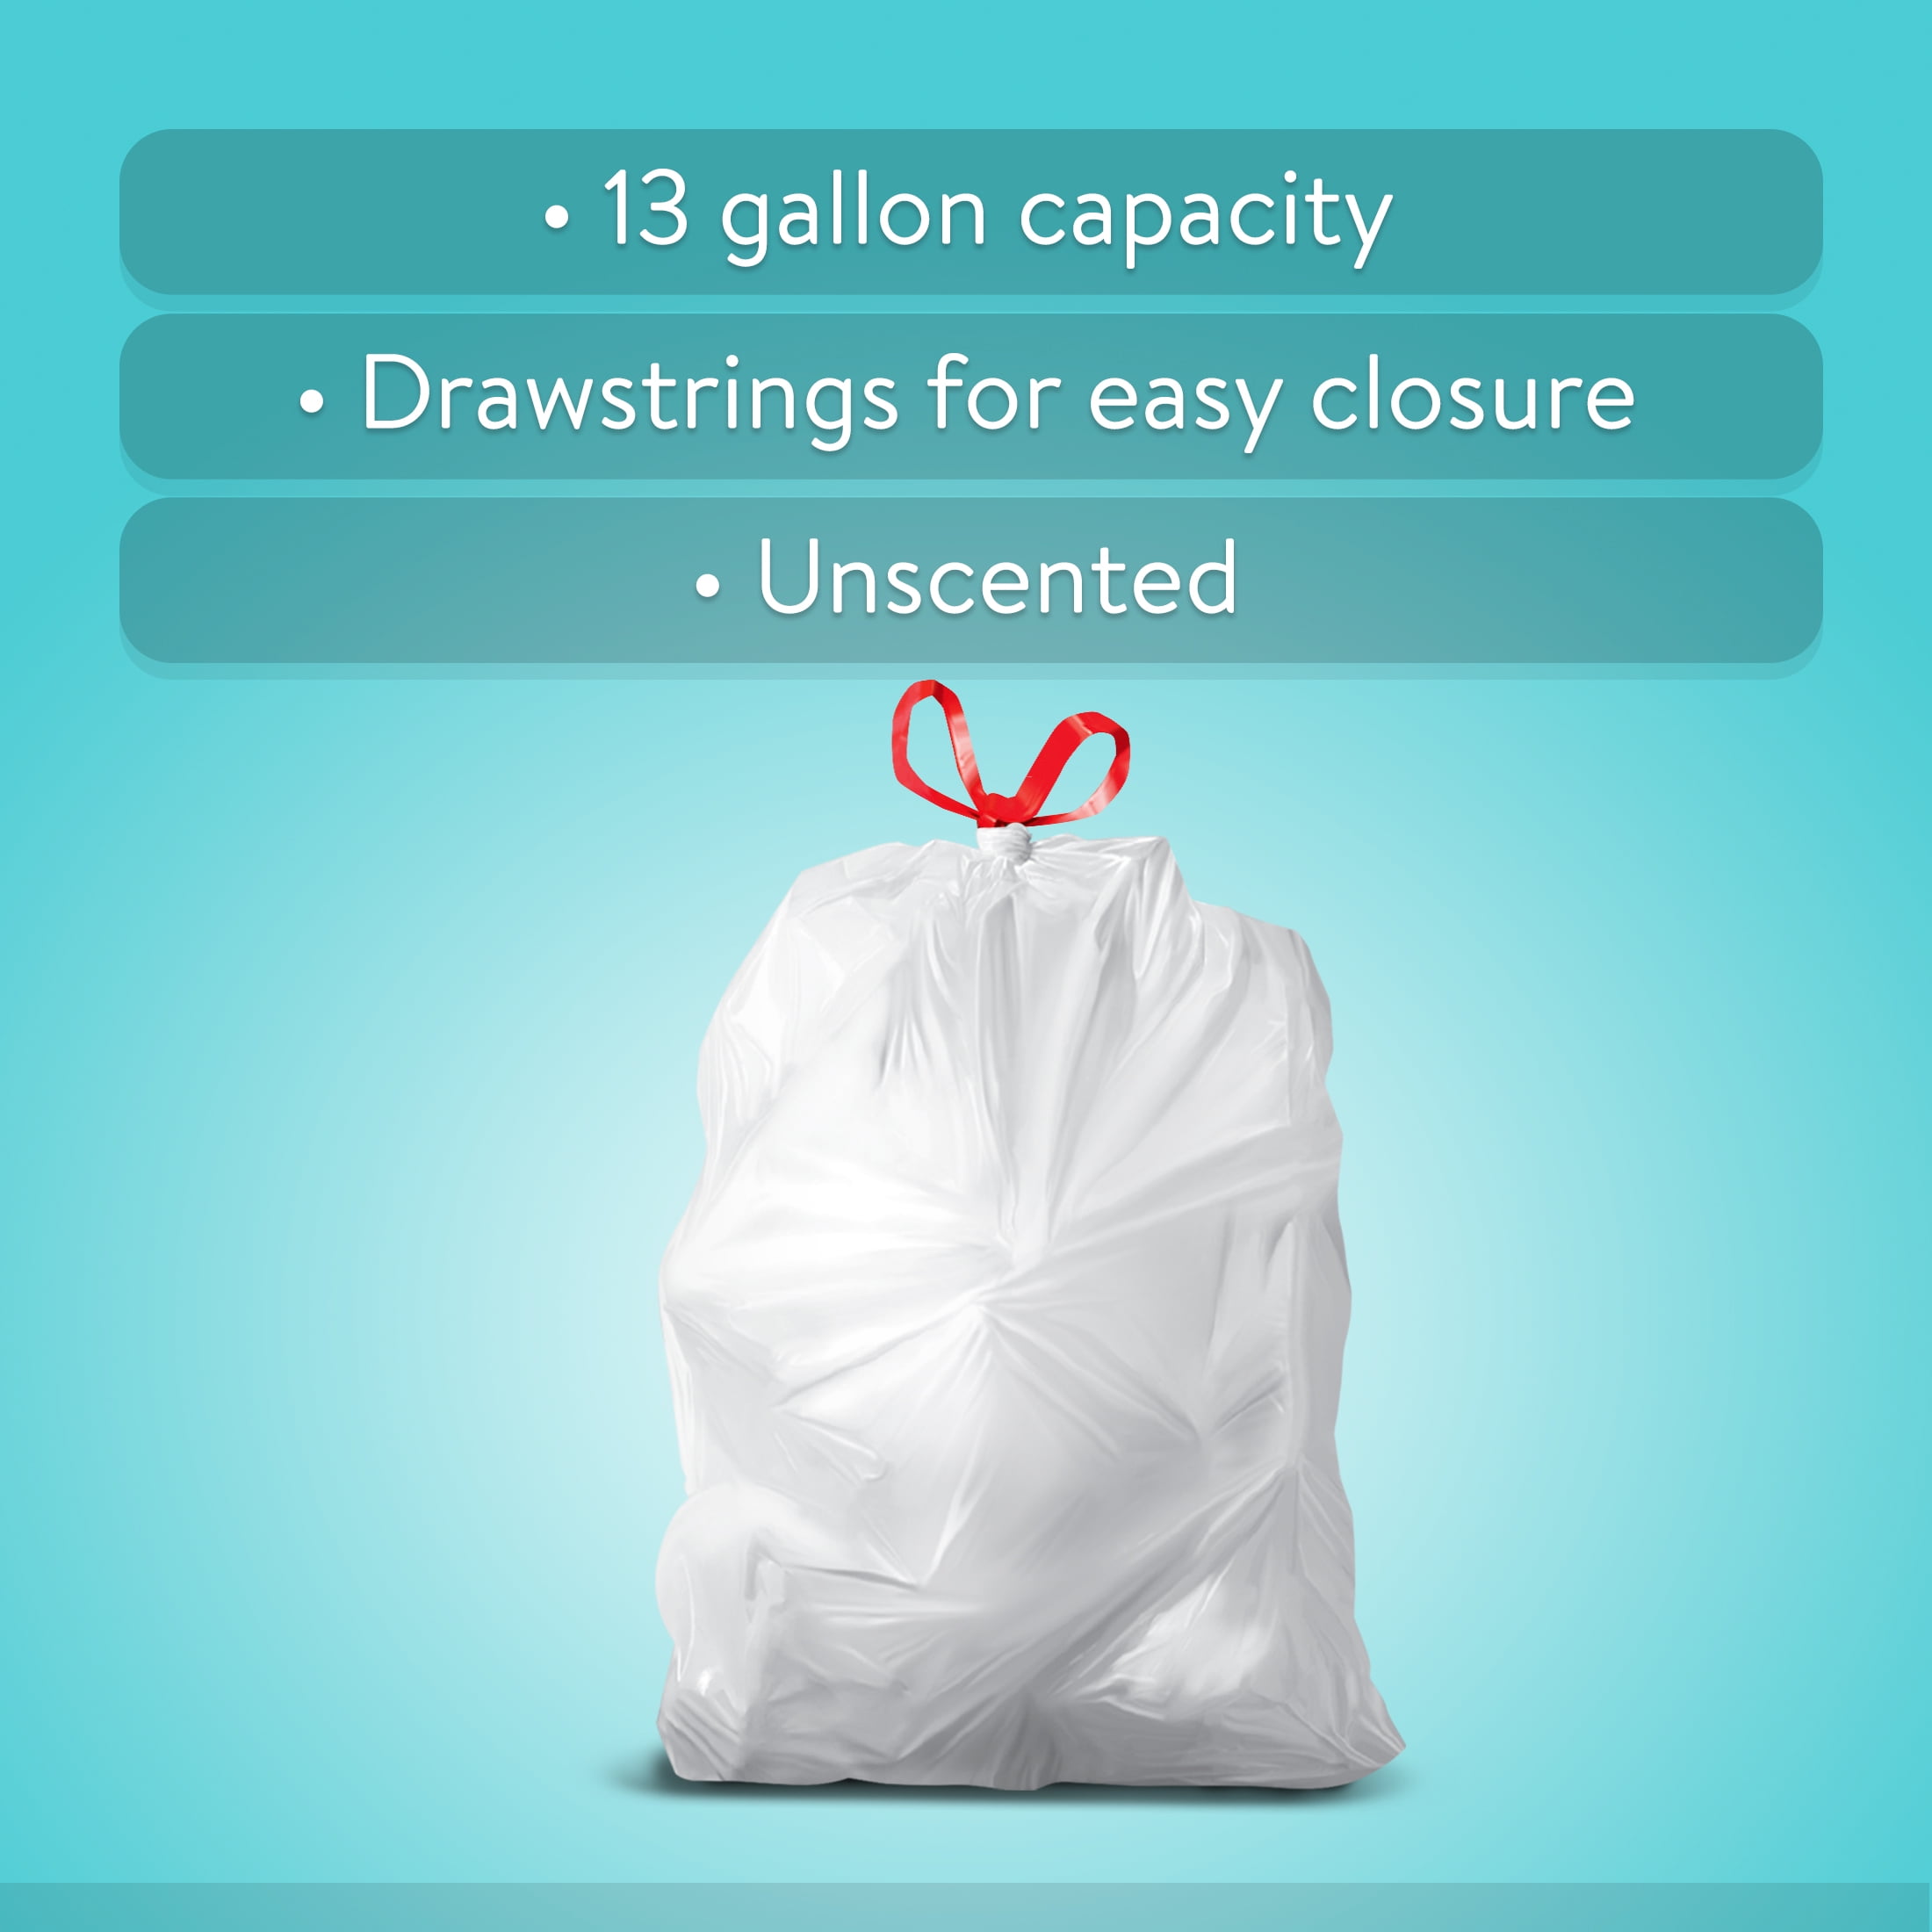 Trash Bag Drawstring Garbage Bags 1 Roll 40 Bags each Small Thickened Trash  Bags